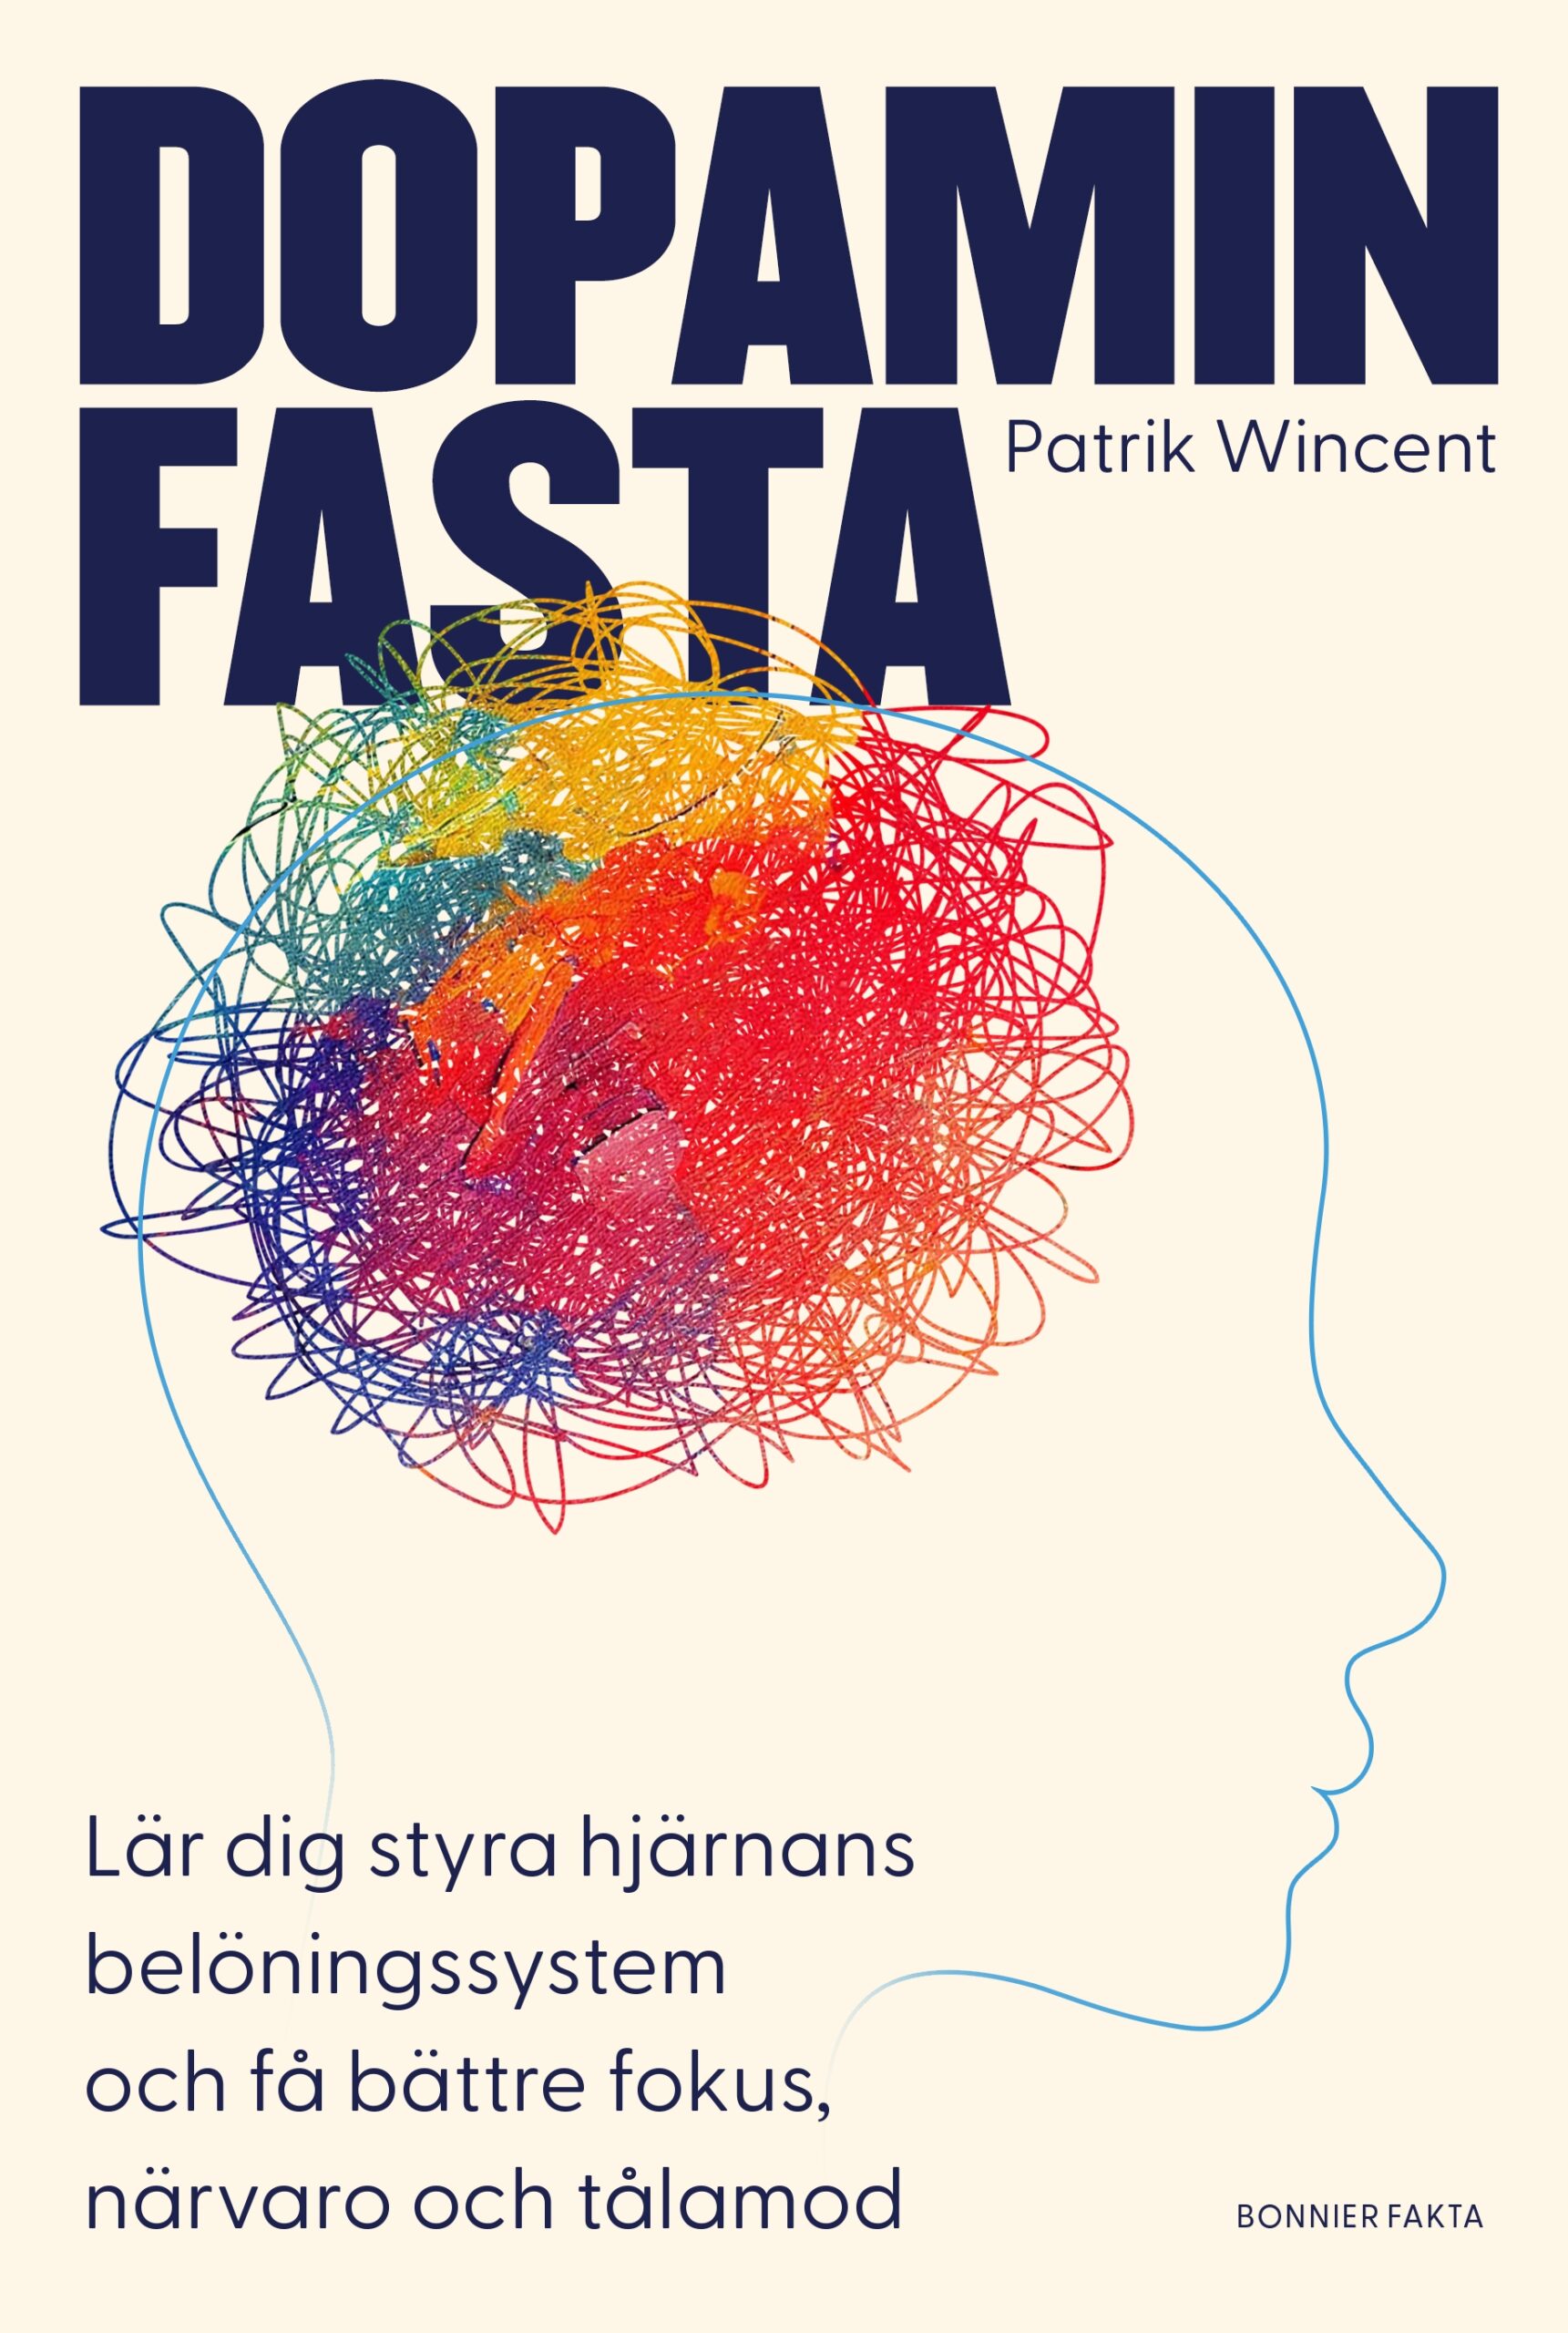 Dopaminfasta  – jag har läst Patrik Wincents nya bok